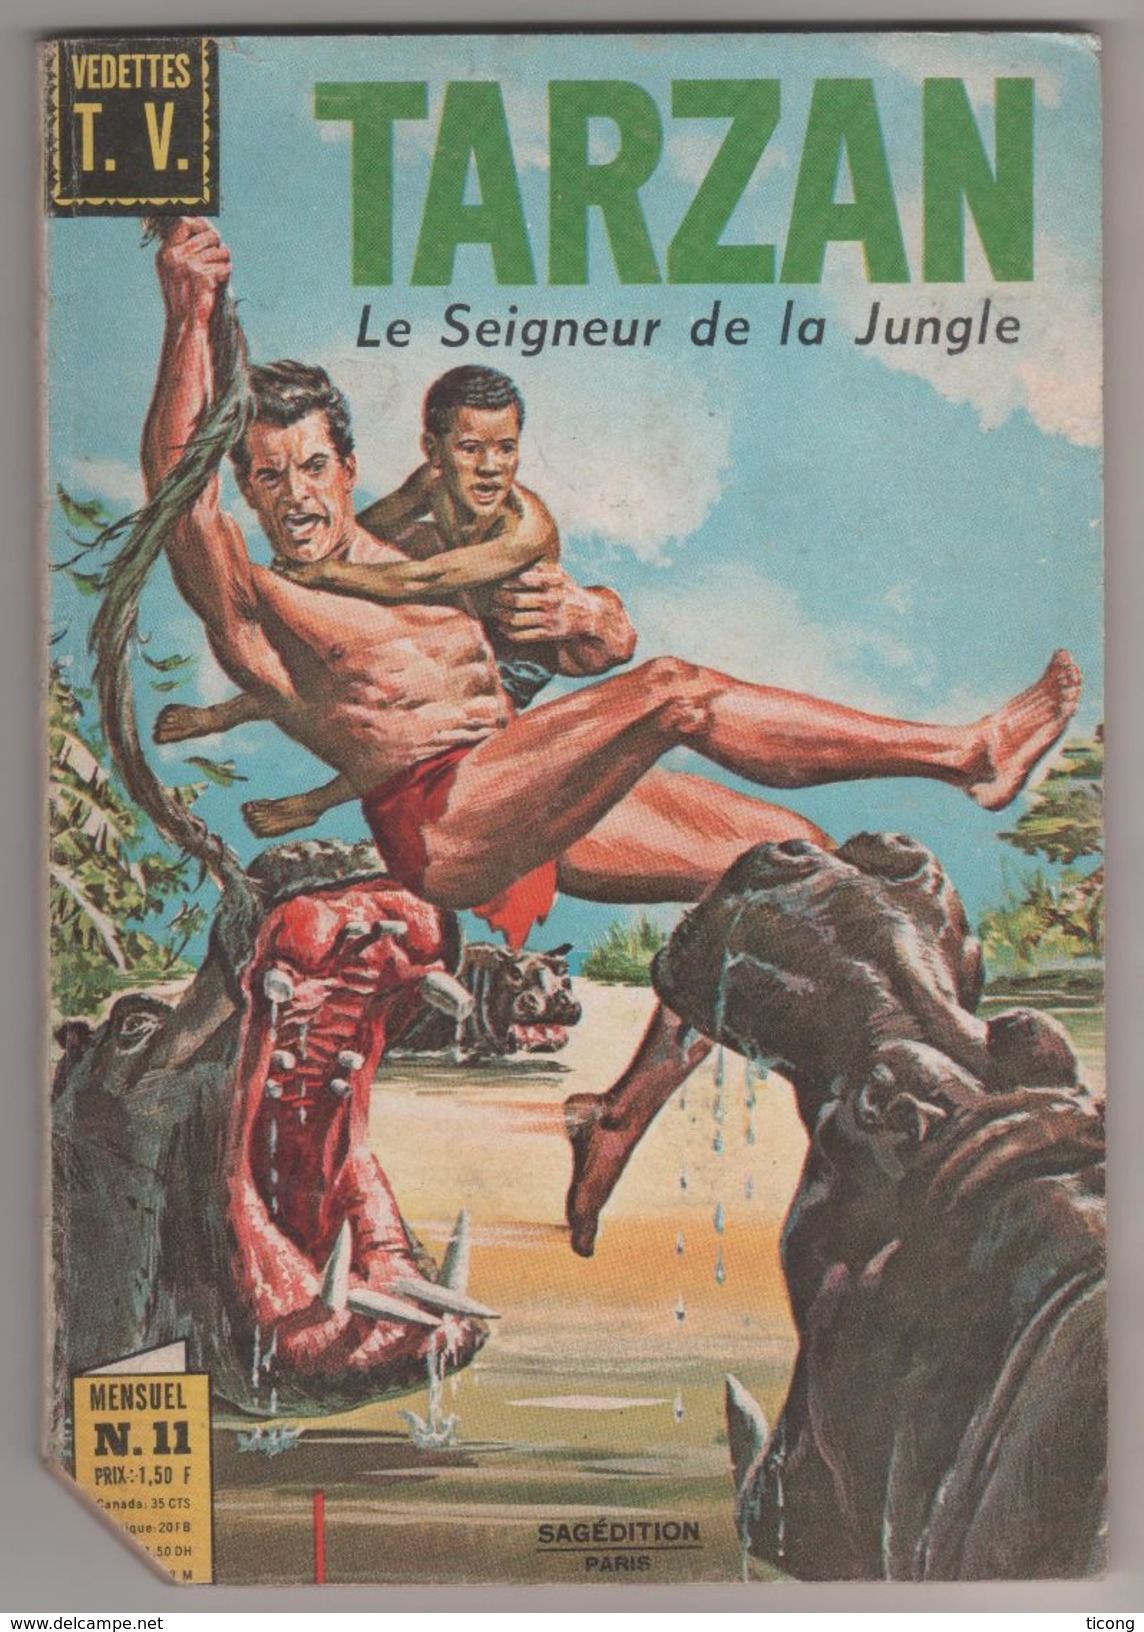 BD TARZAN SAGEDITION PARIS 1969 - LA VALLEE DU SEPULCRE, KORAC TERREUR SUR LA PLAGE, LES PROTOCERATOPS ( DINOSAURES ).. - Tarzan